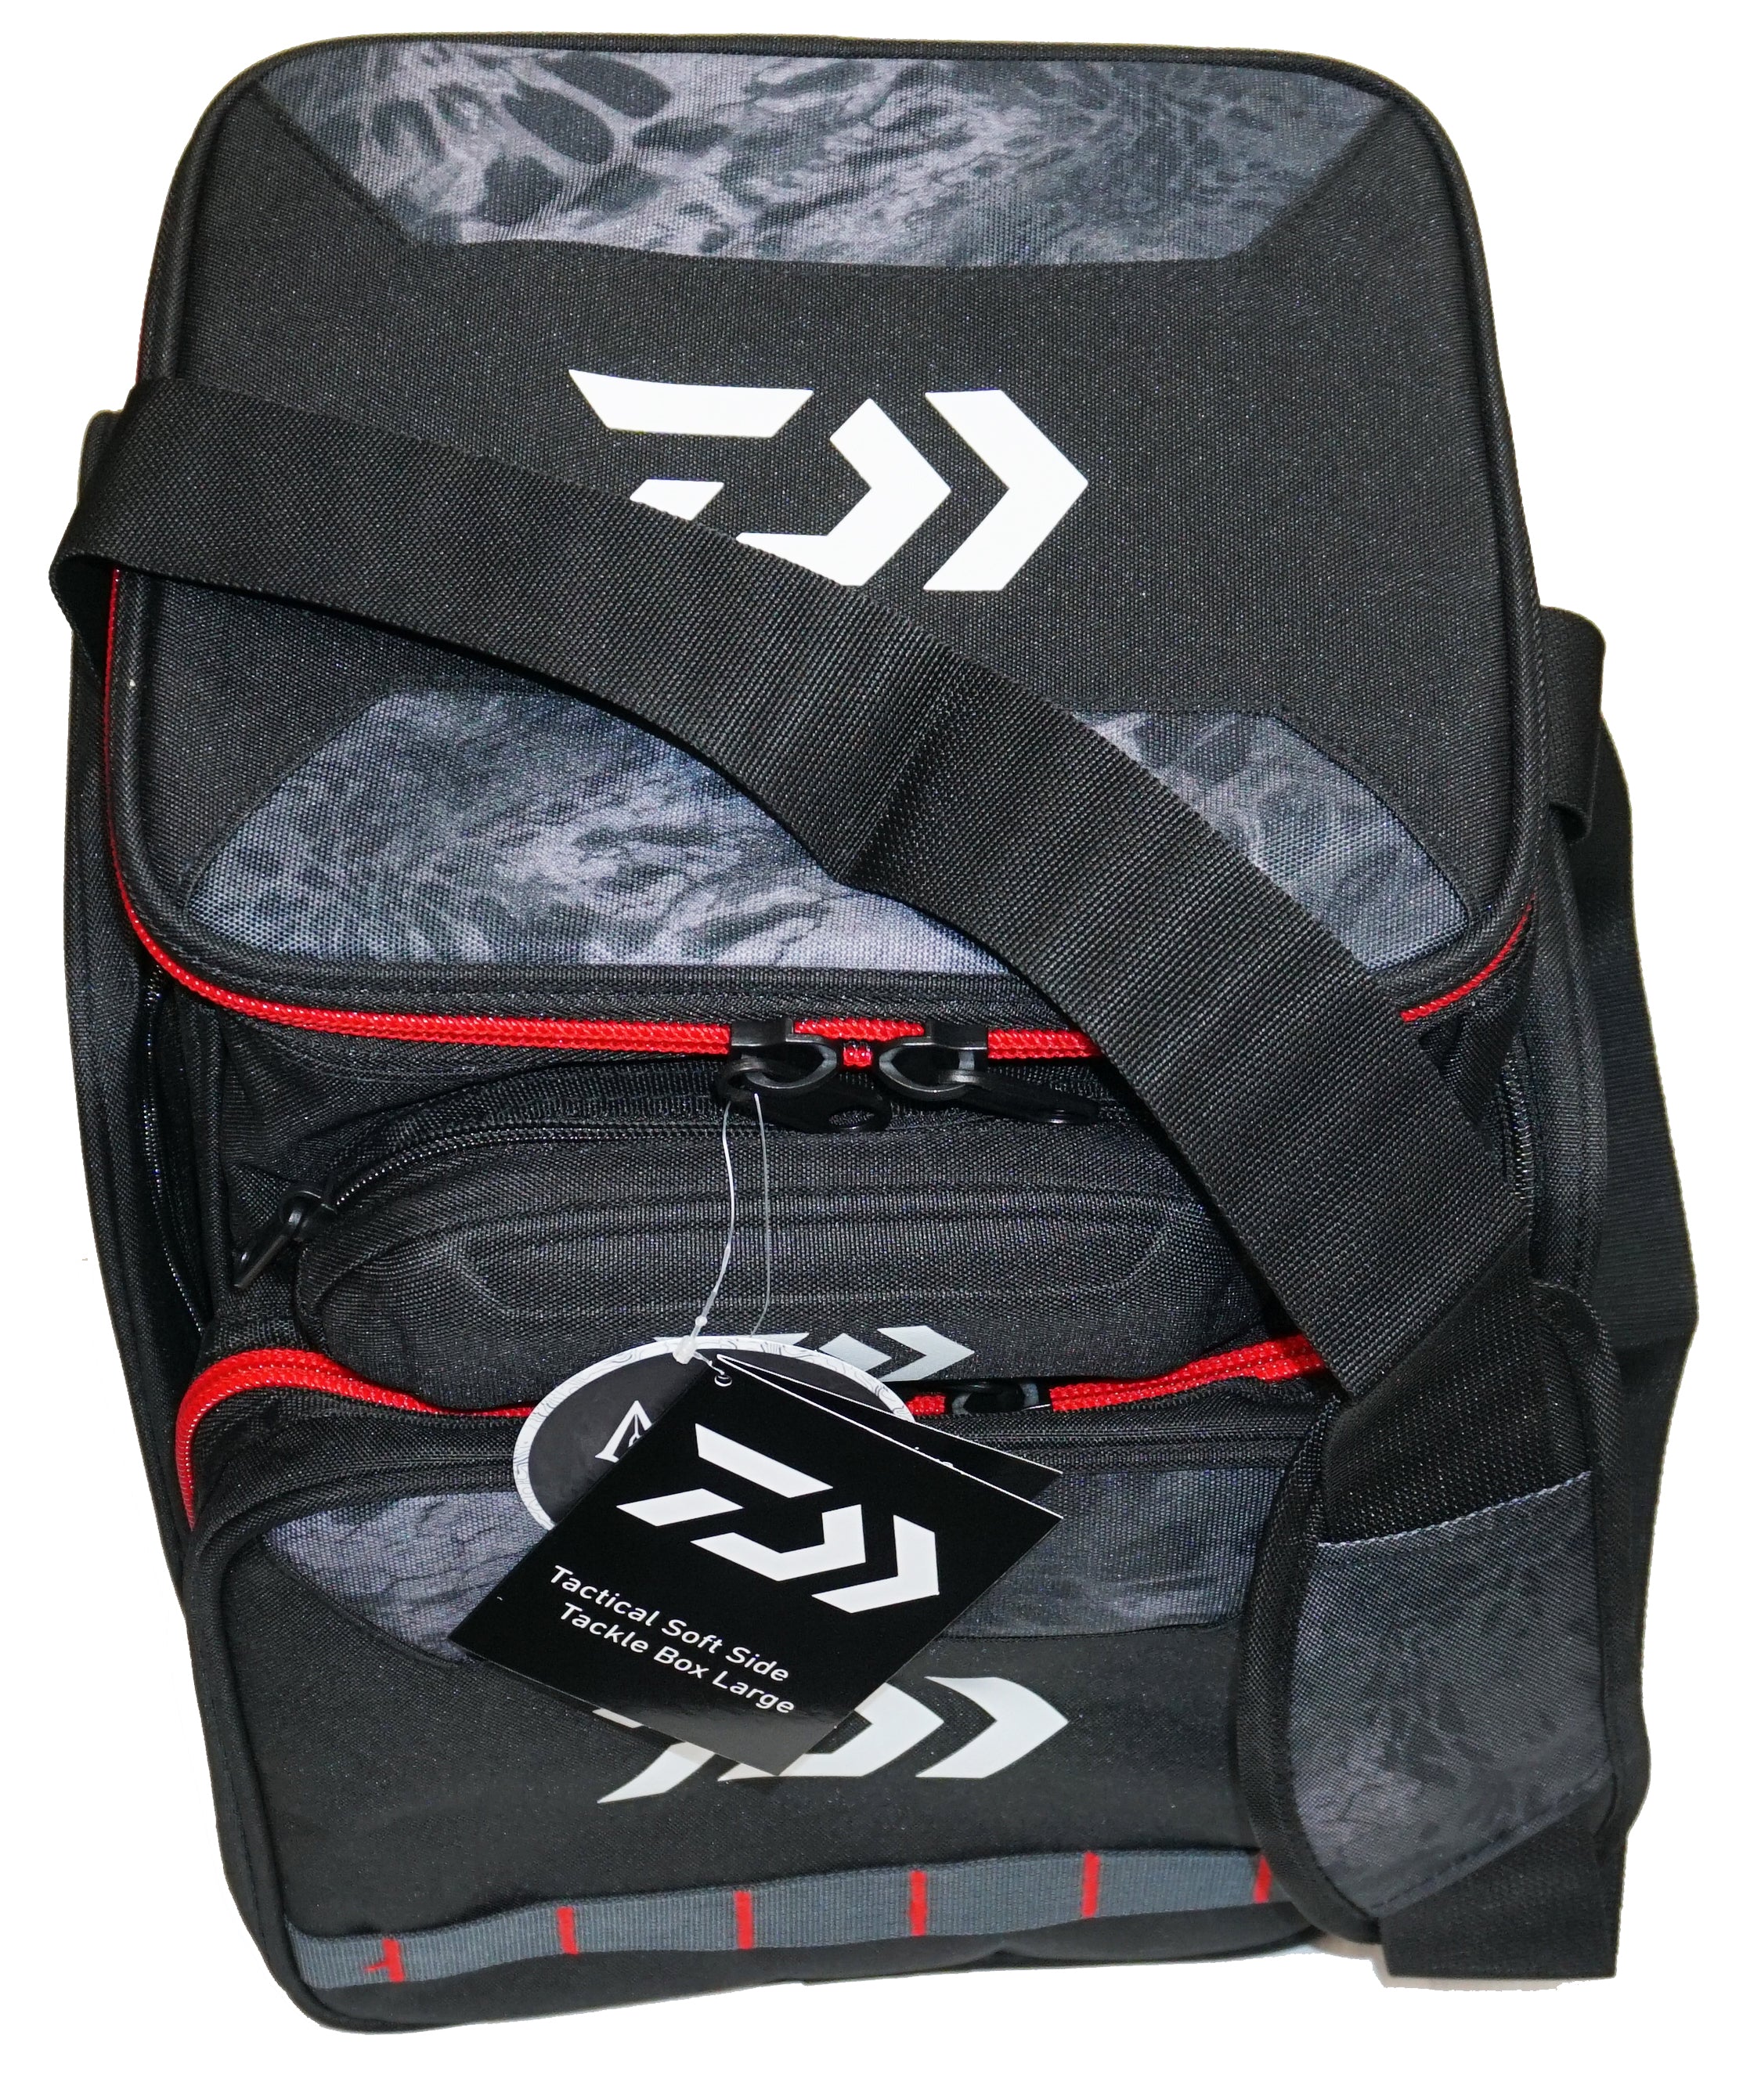 Daiwa tactical backpack